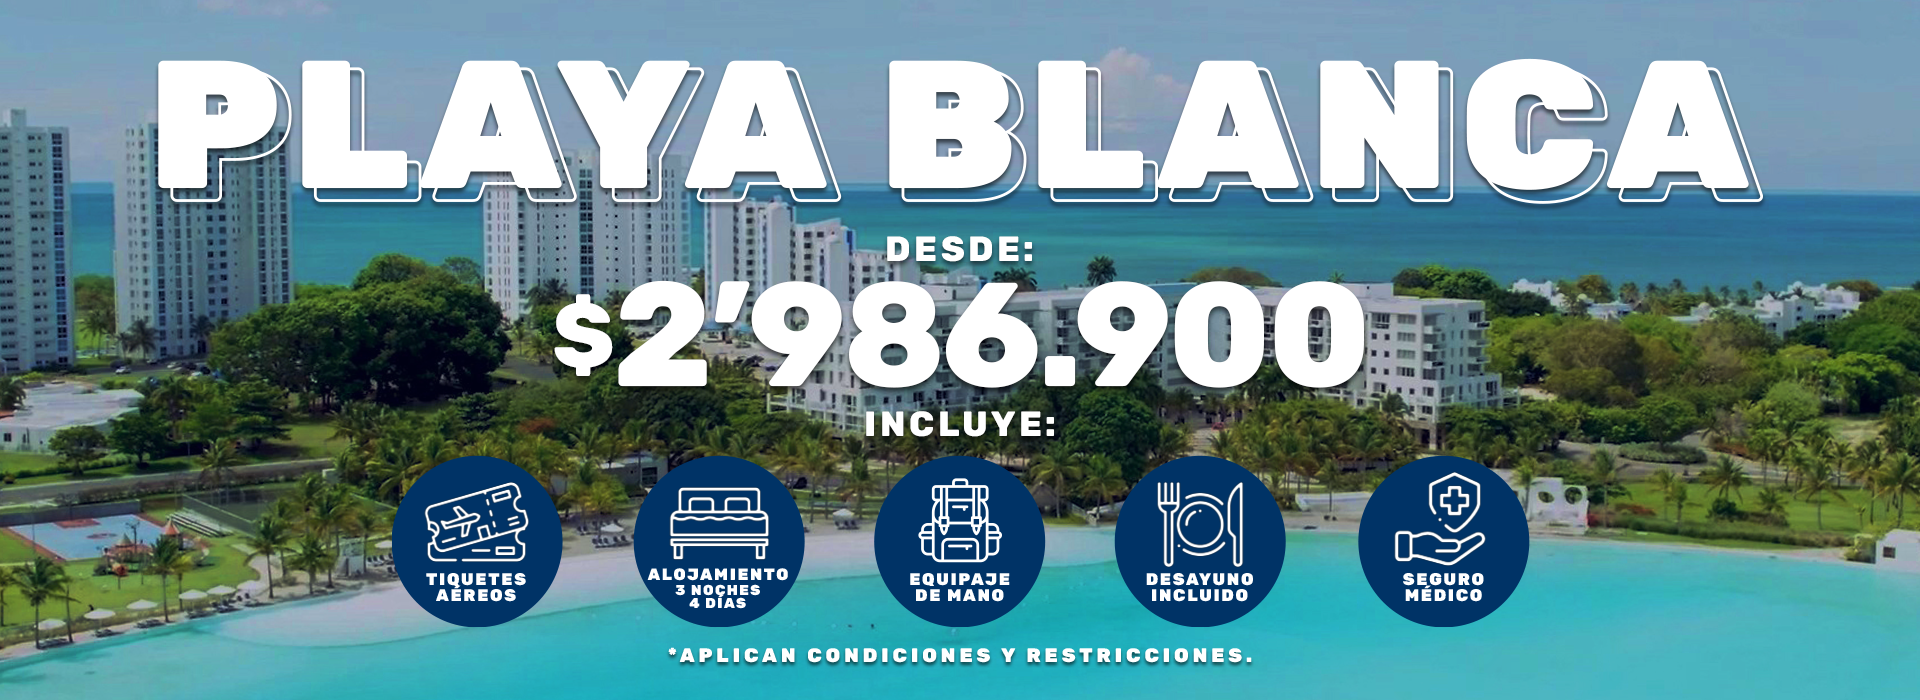 Paquete a Playa Blanca: Vuelo + Hotel